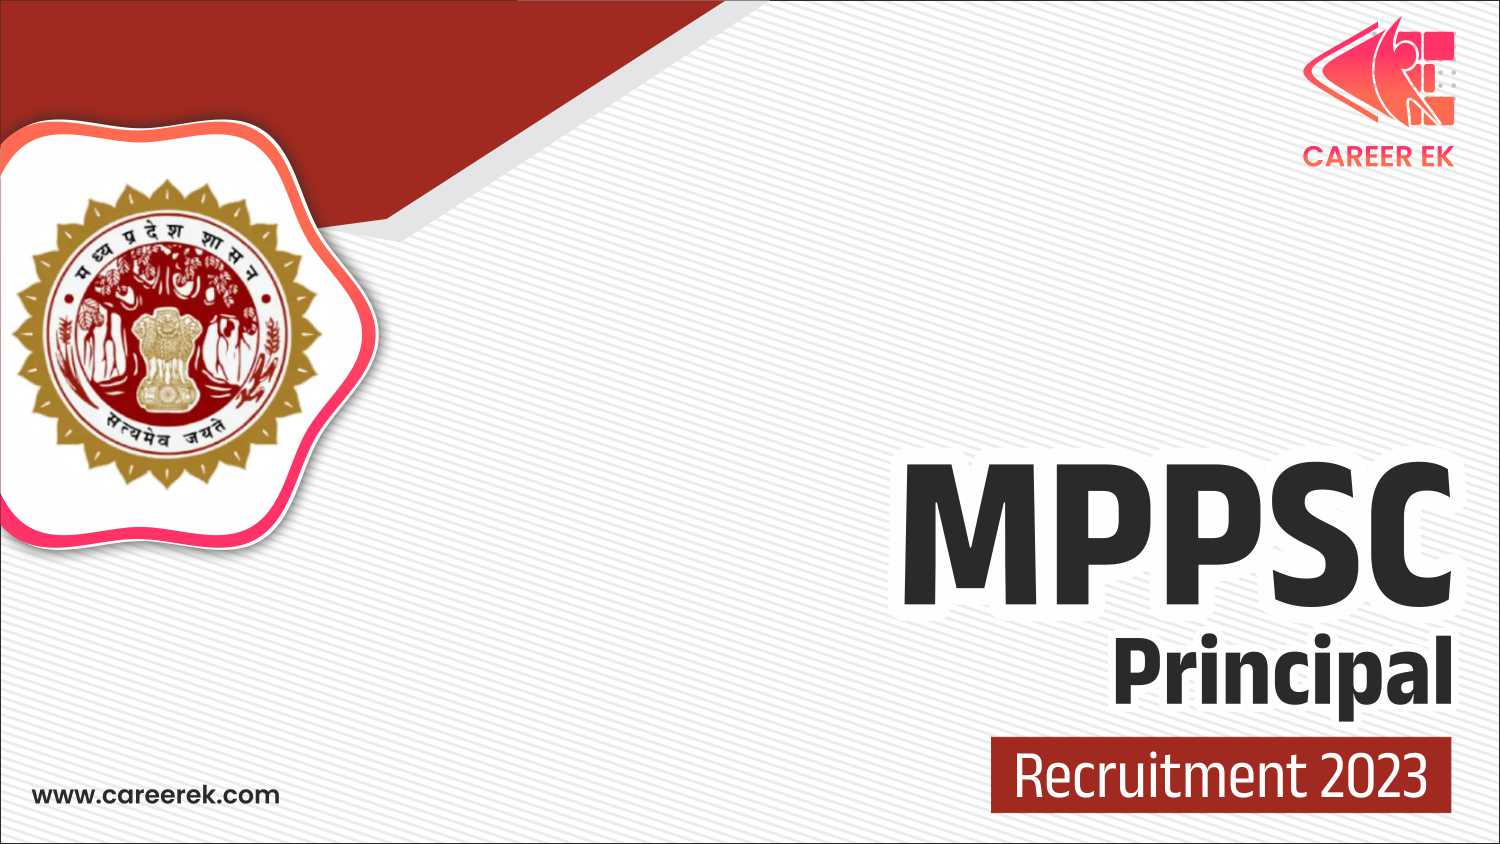 MPPSC Principal Recruitment 2023